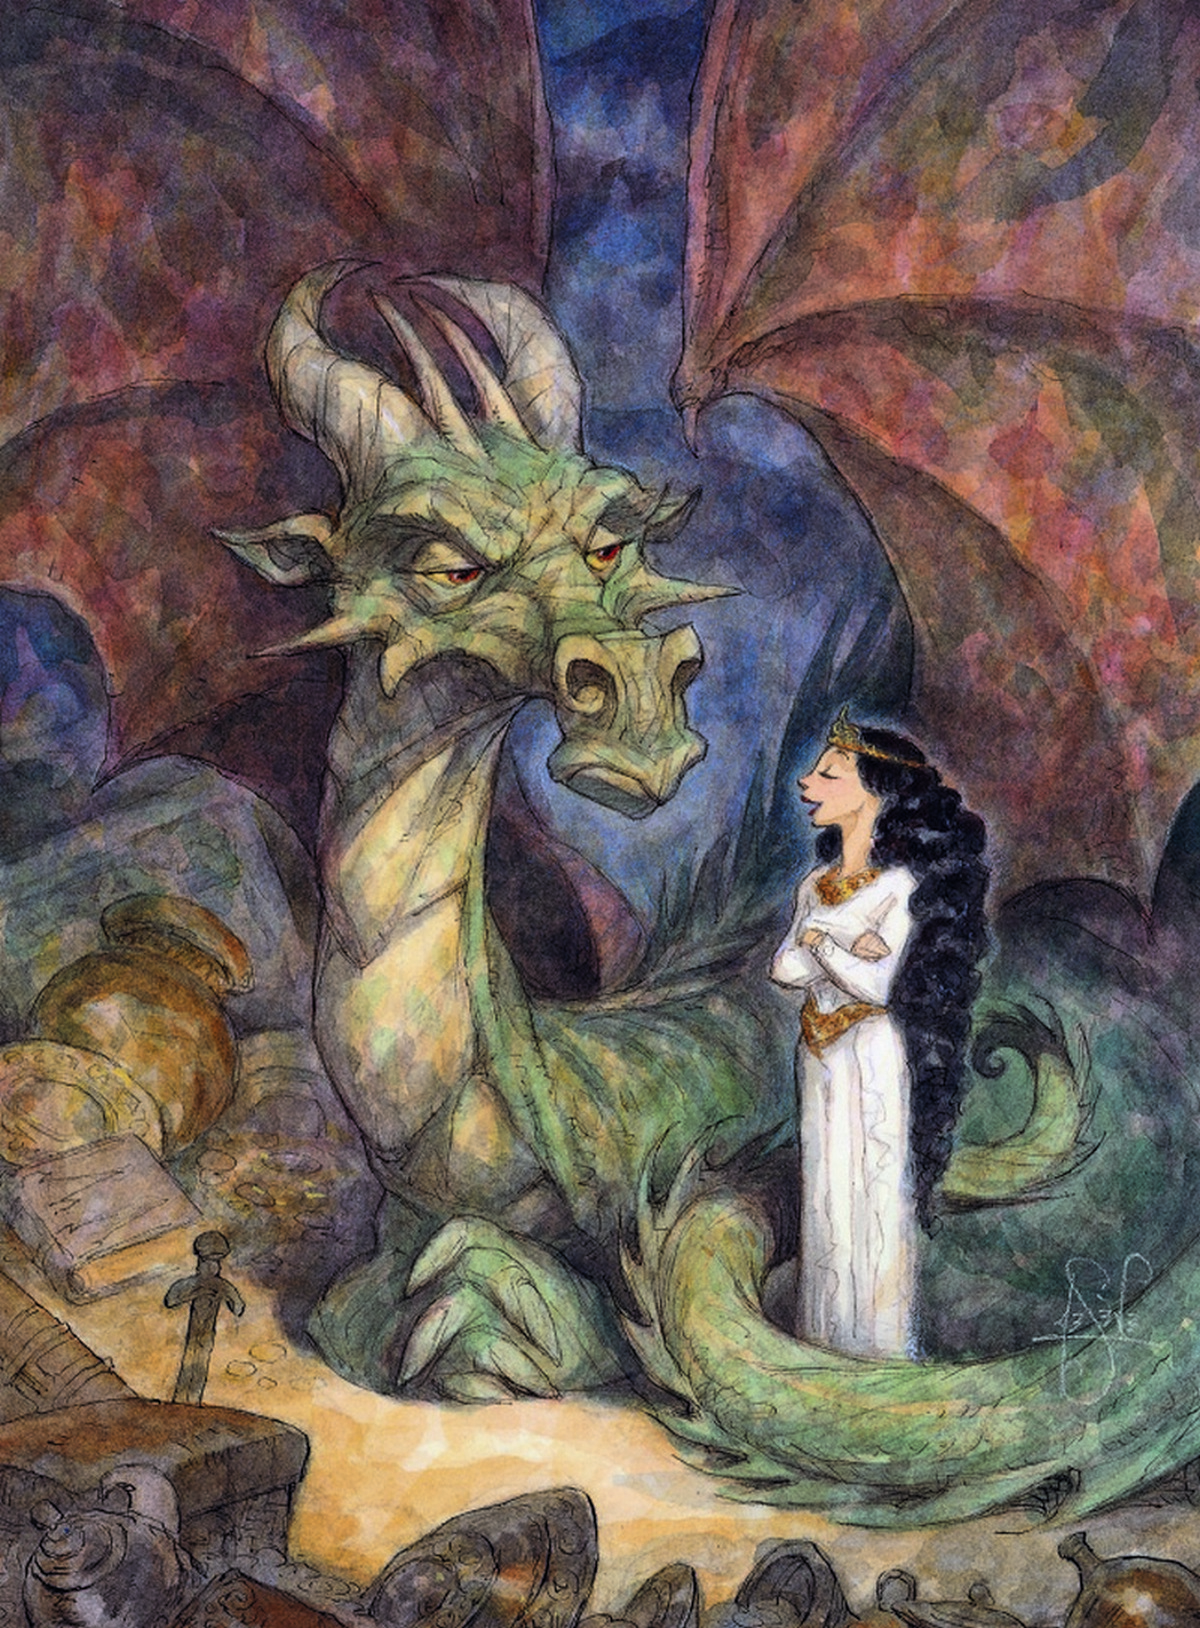 Драконы обожают принцесс. Питер де Севе (Peter de Seve) рисунки драконов. Peter de Seve иллюстрации. Иллюстрация Питера де Севе. Принцесса и дракон.